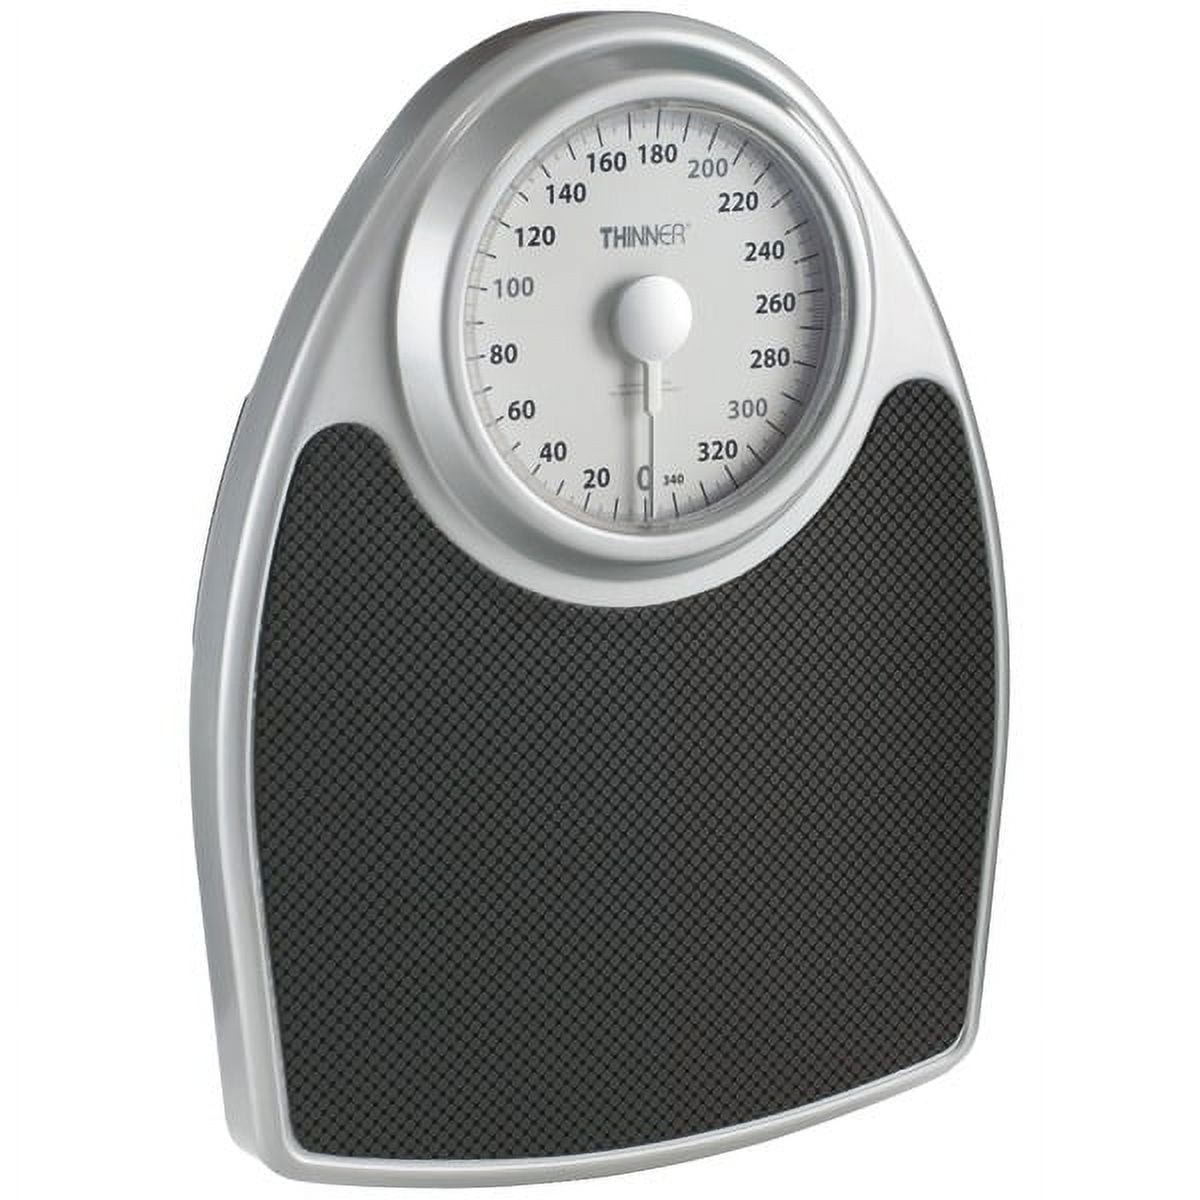 Weight Watchers Digital Precision Scale (ww204wgbx) 